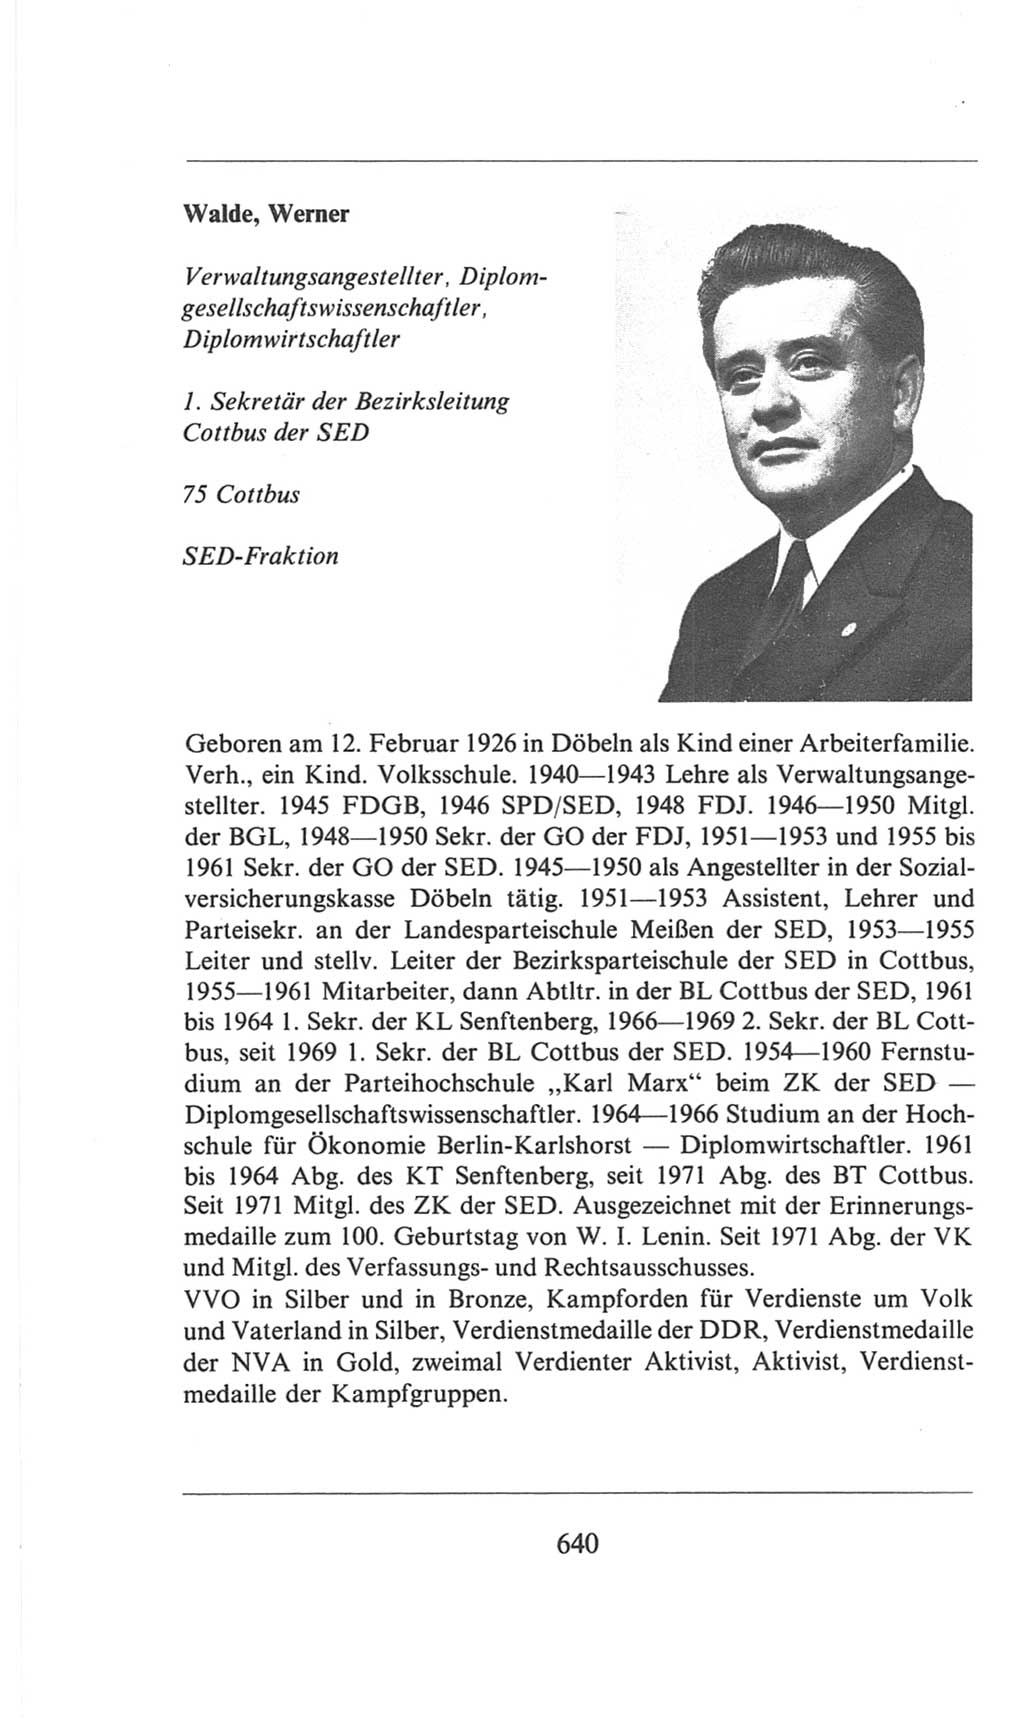 Volkskammer (VK) der Deutschen Demokratischen Republik (DDR), 6. Wahlperiode 1971-1976, Seite 640 (VK. DDR 6. WP. 1971-1976, S. 640)